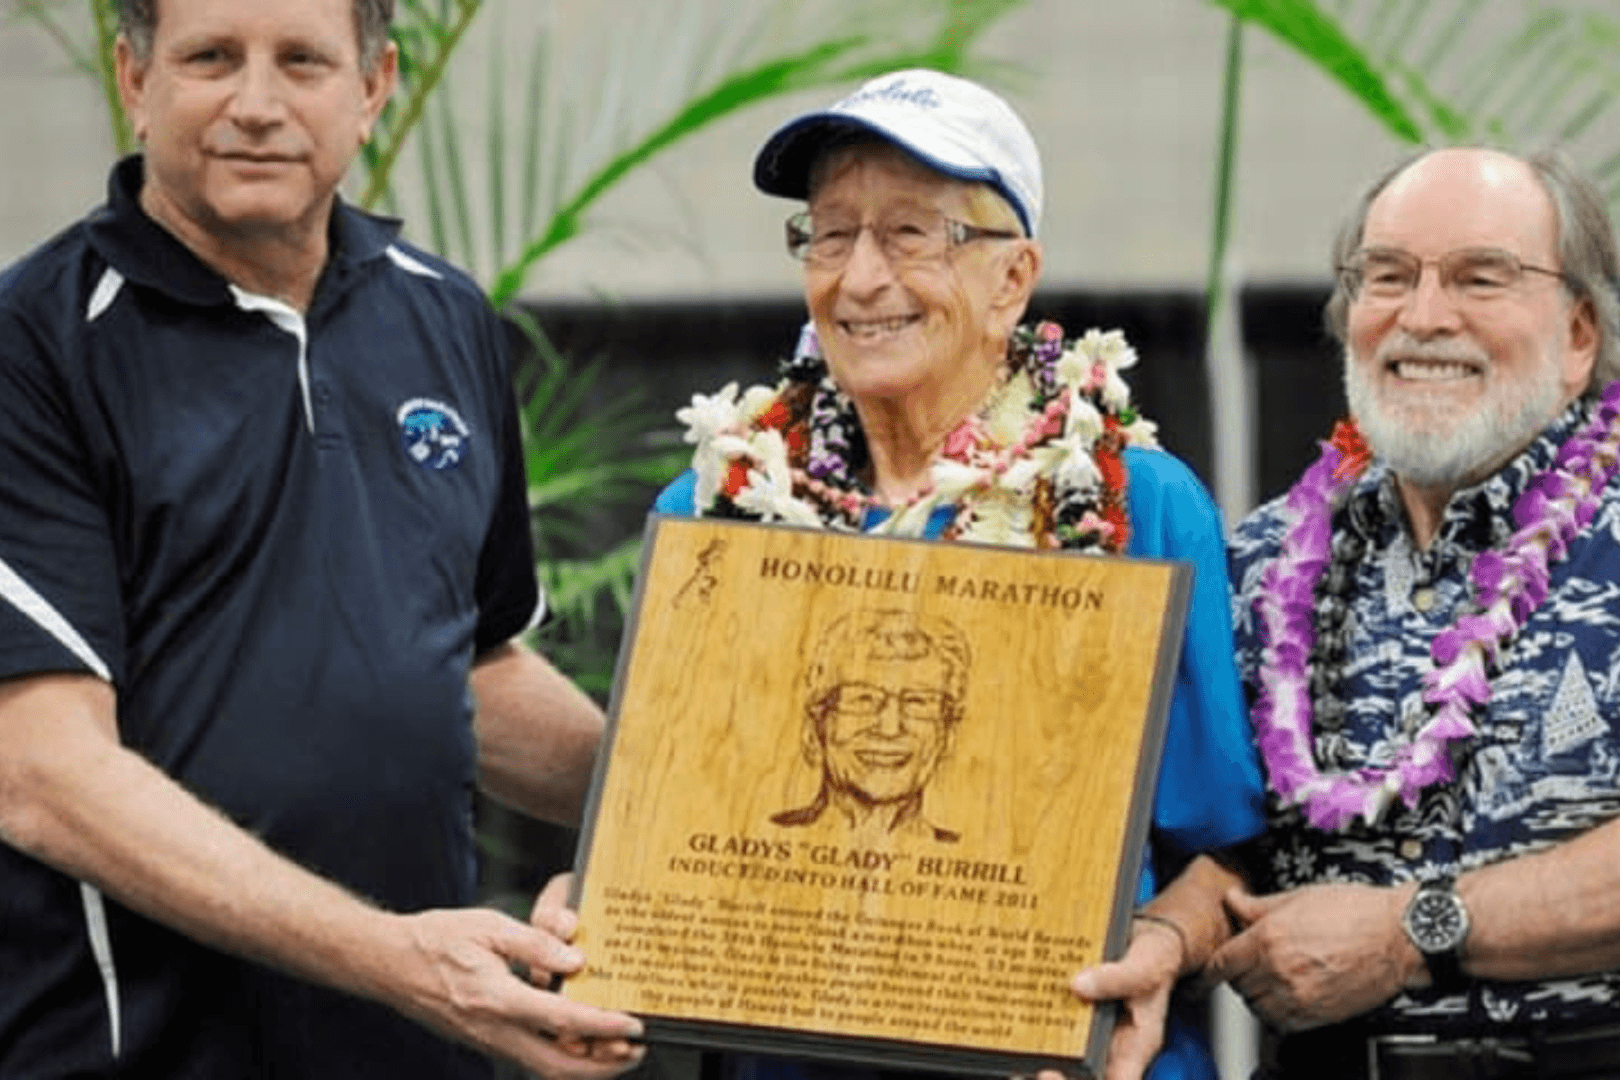 Una imagen de la atleta anciana Gladys Burrill recogiendo un homenaje por la maratón de Honolulu.